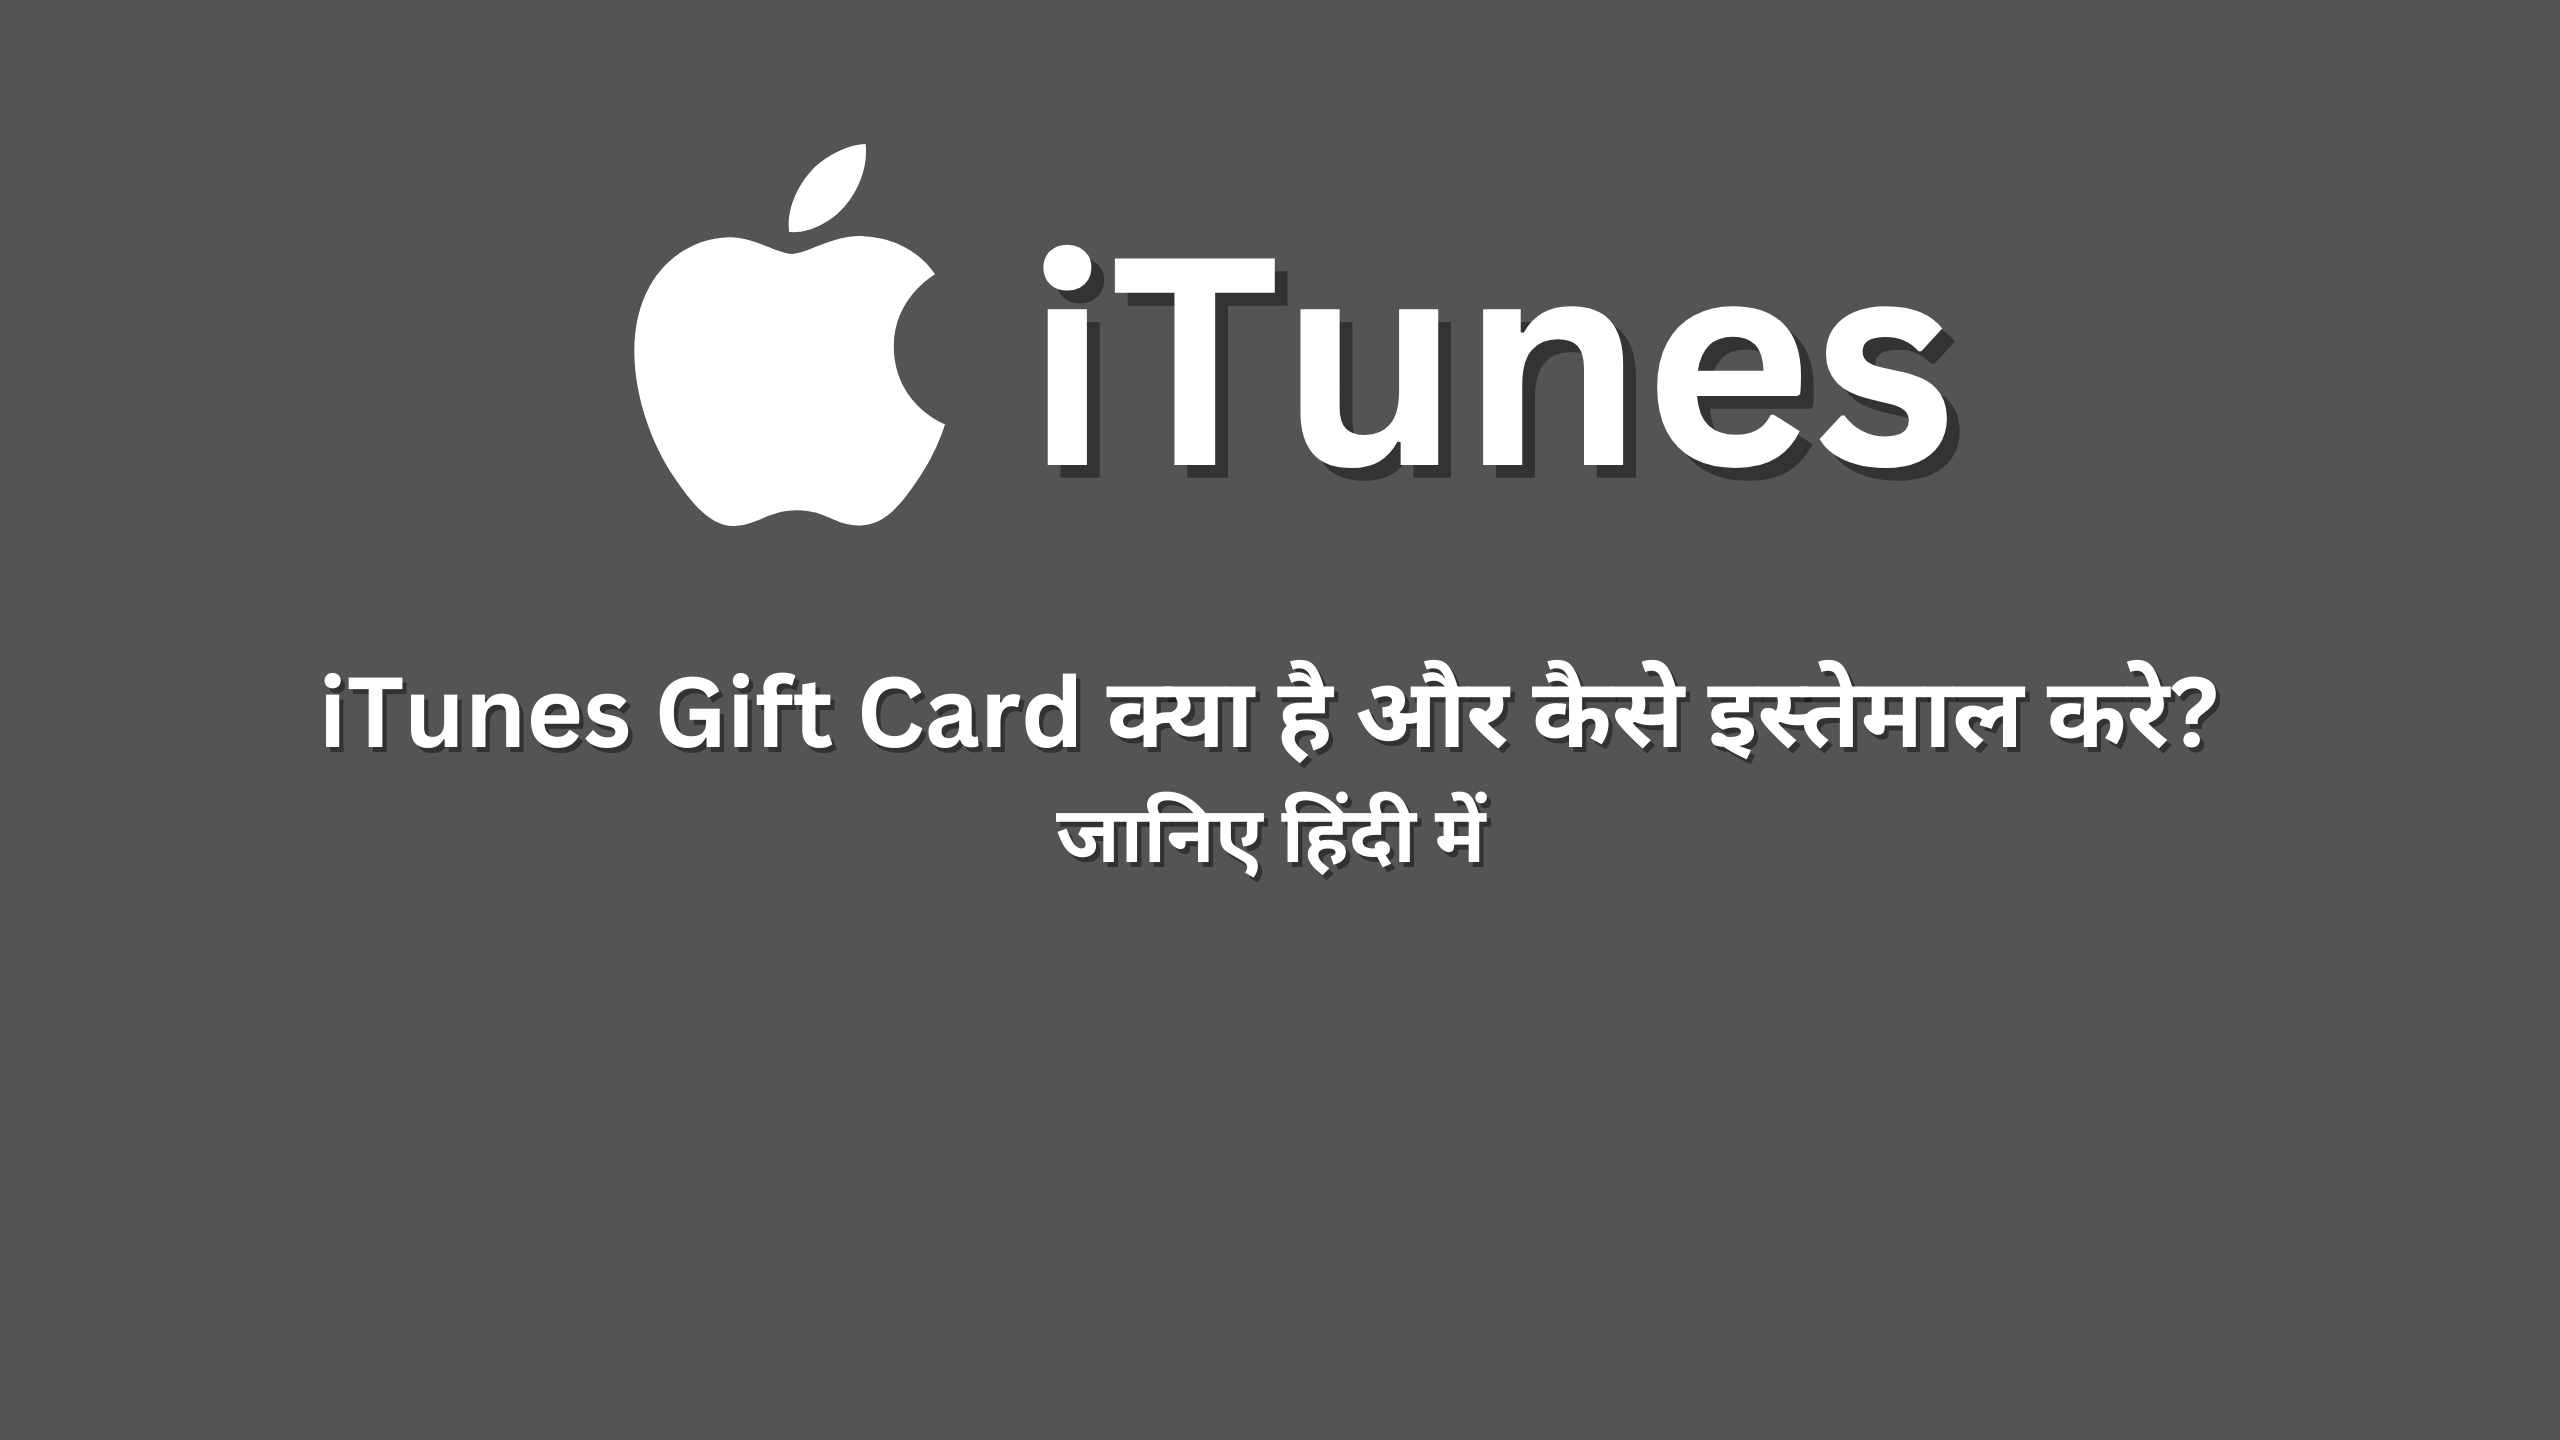 iTunes Gift Card kya hai